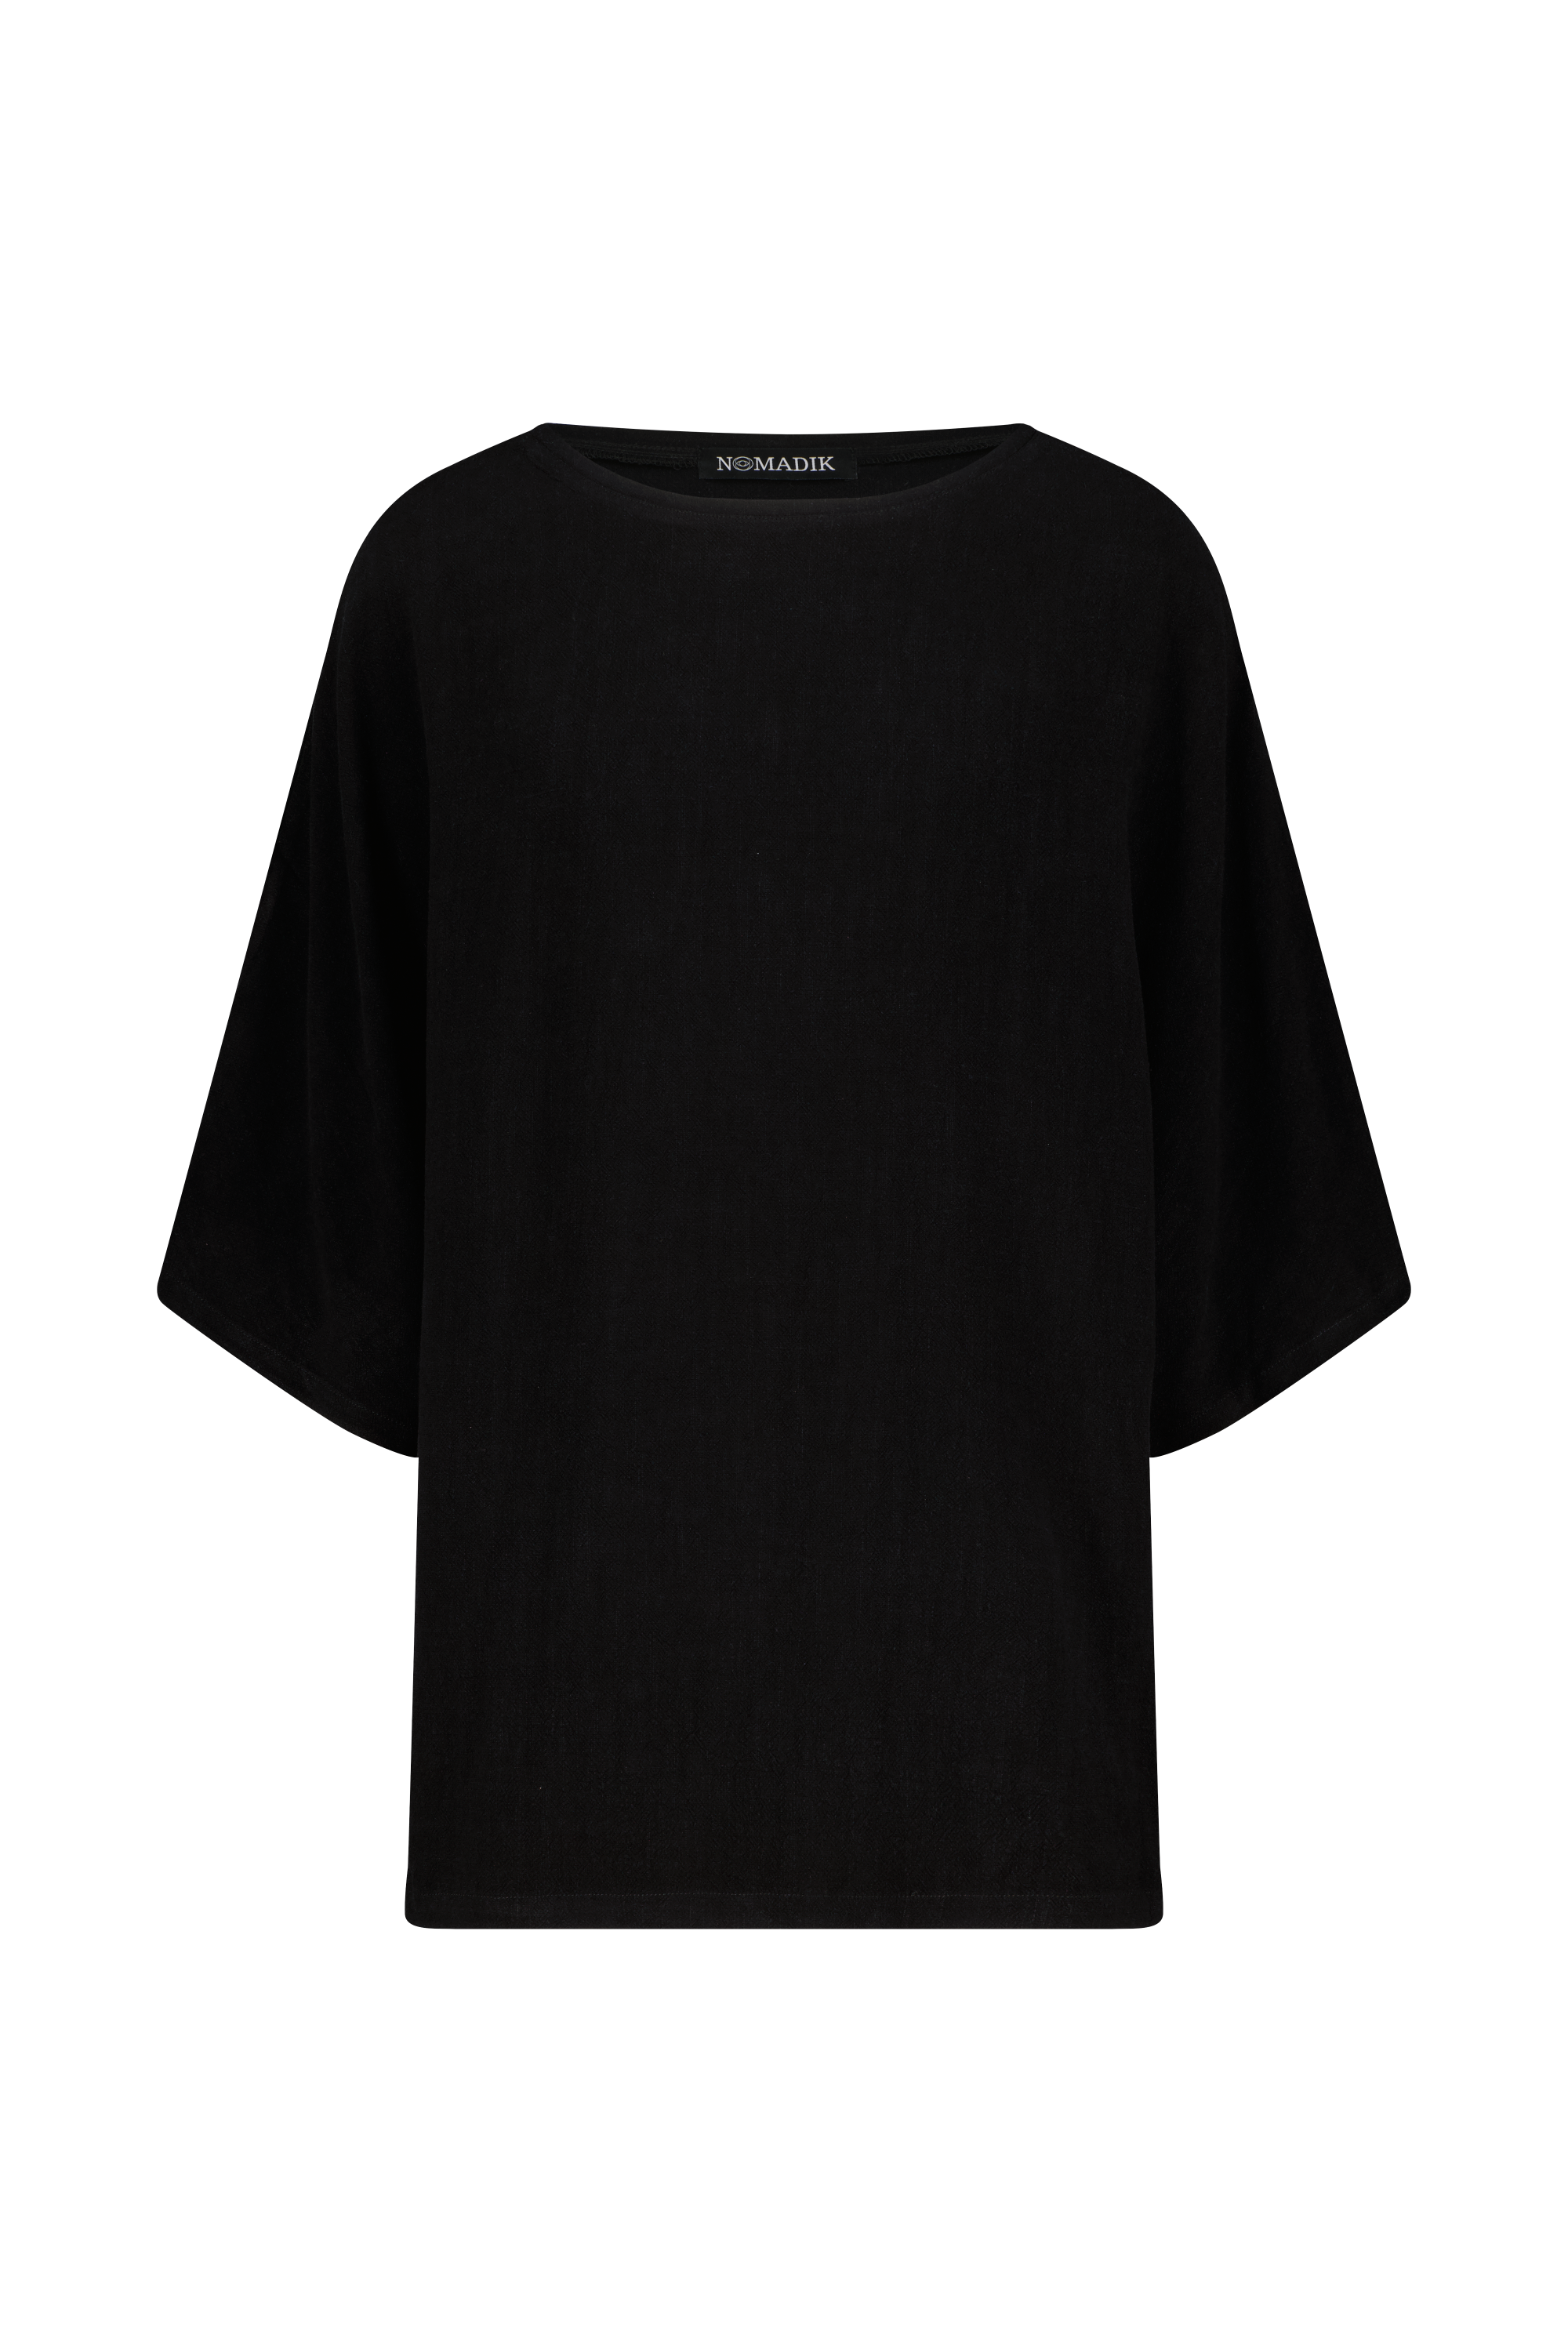  schwarzes Oversize Leinen T-Shirt von Nomadik, designed in Zurich. Luftig-leichter Stoff für Komfort und Bewegungsfreiheit an warmen Tagen.